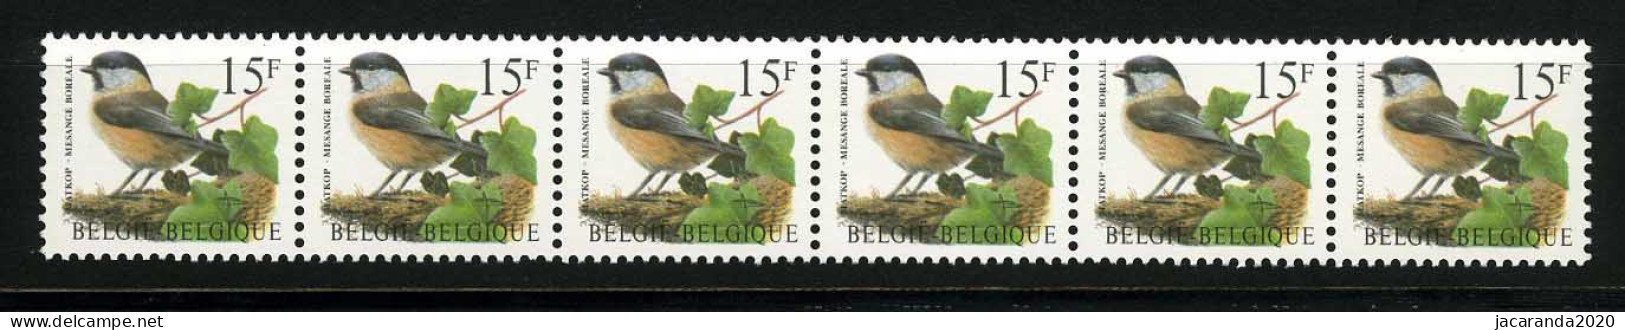 België R81a - Vogels - Oiseaux - Buzin (2732) - Strook Van 6 ZONDER NUMMER - SANS NUMERO - ZELDZAAM - RARE - LUXE - Rouleaux